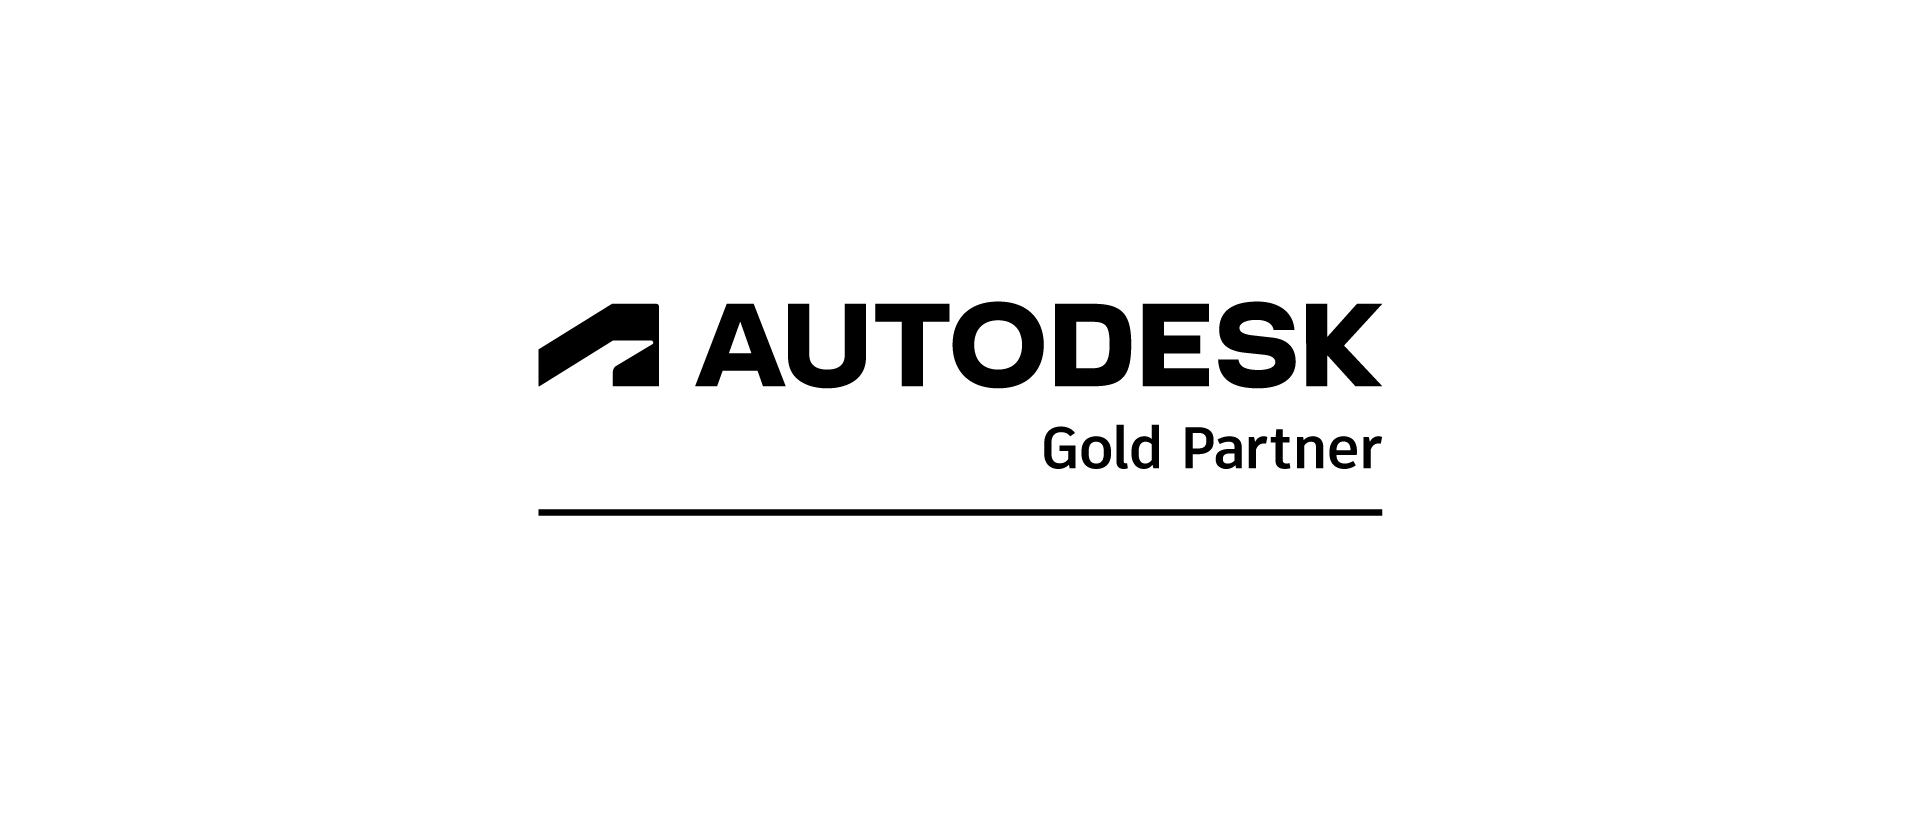 Autodesk Gold Partner Rebrand